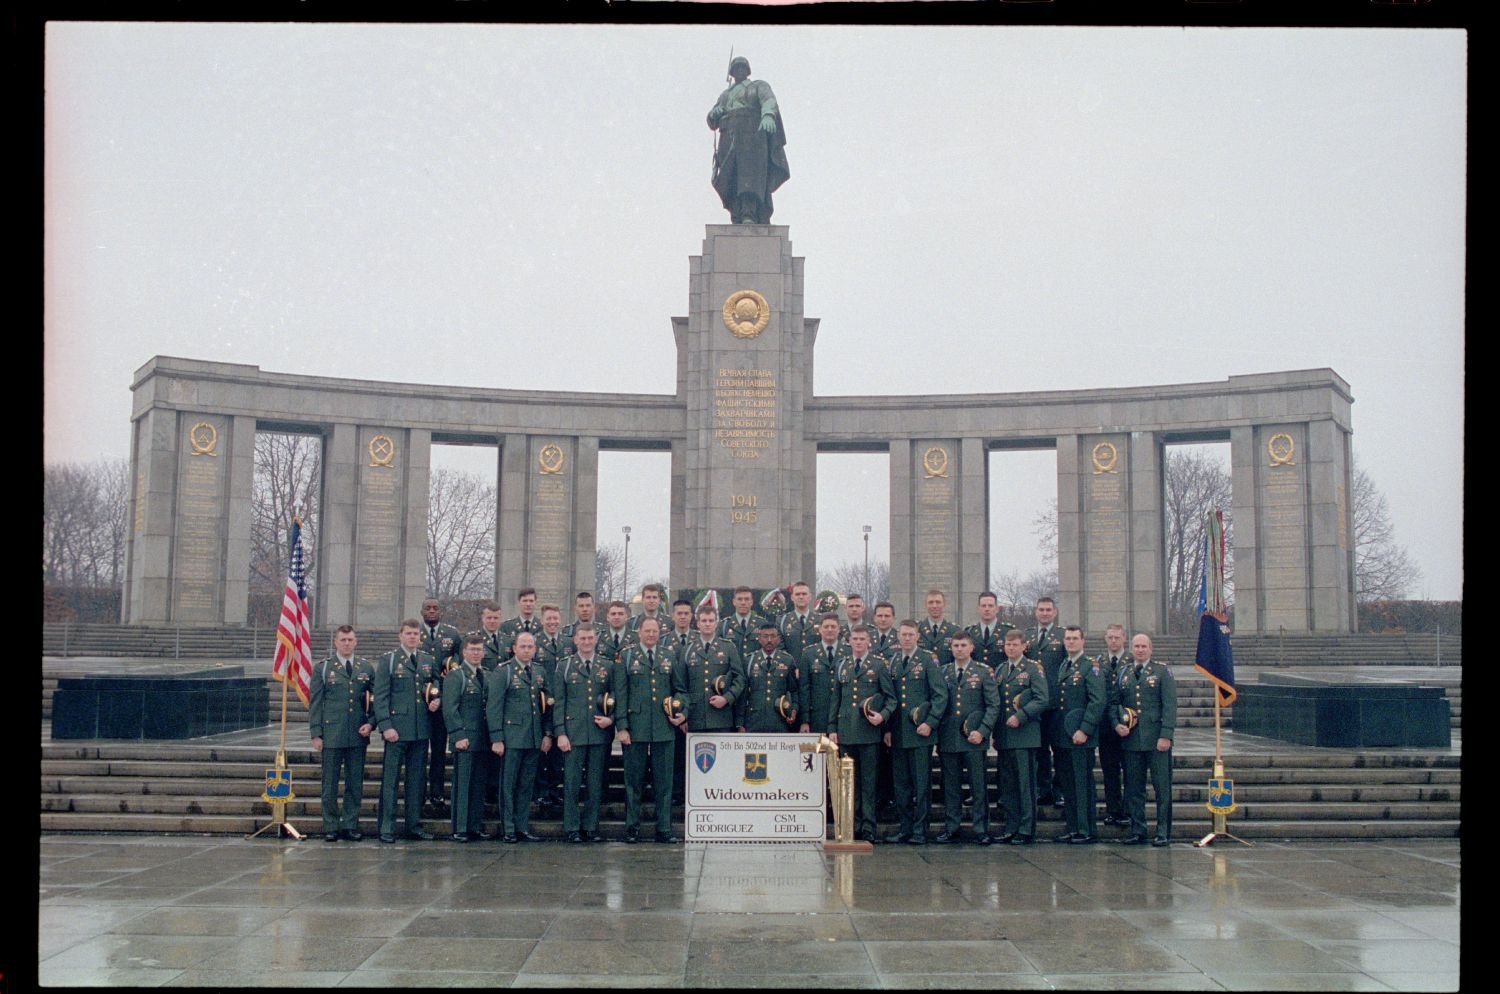 Fotografie: Offiziere des 5th Battalion, 502nd Infantry Regiment der U.S. Army Berlin vor dem Sowjetischen Ehrenmal in Berlin-Tiergarten